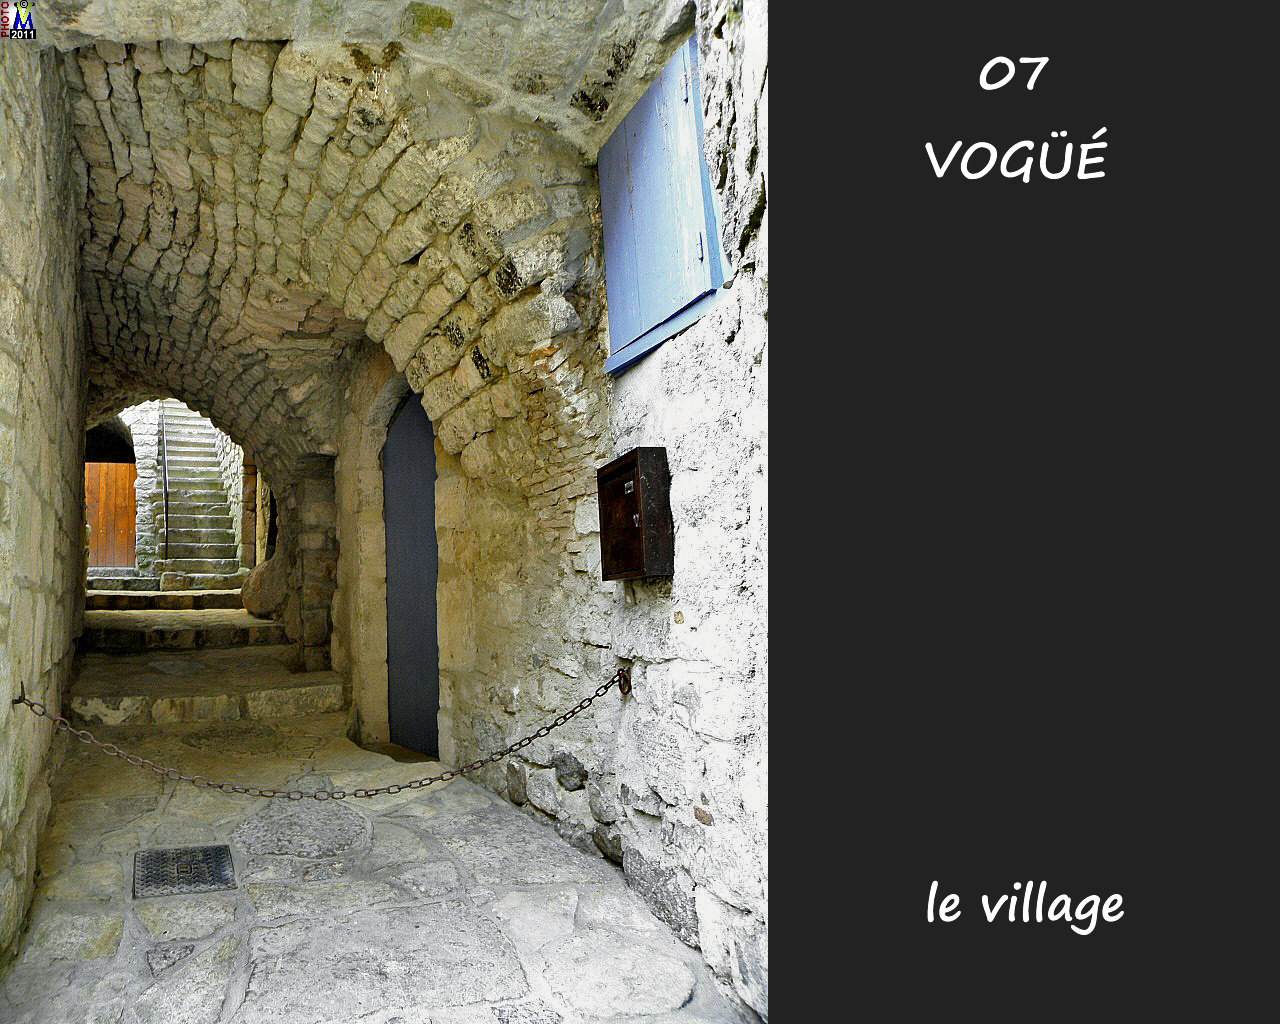 07VOGUE_village_124.jpg